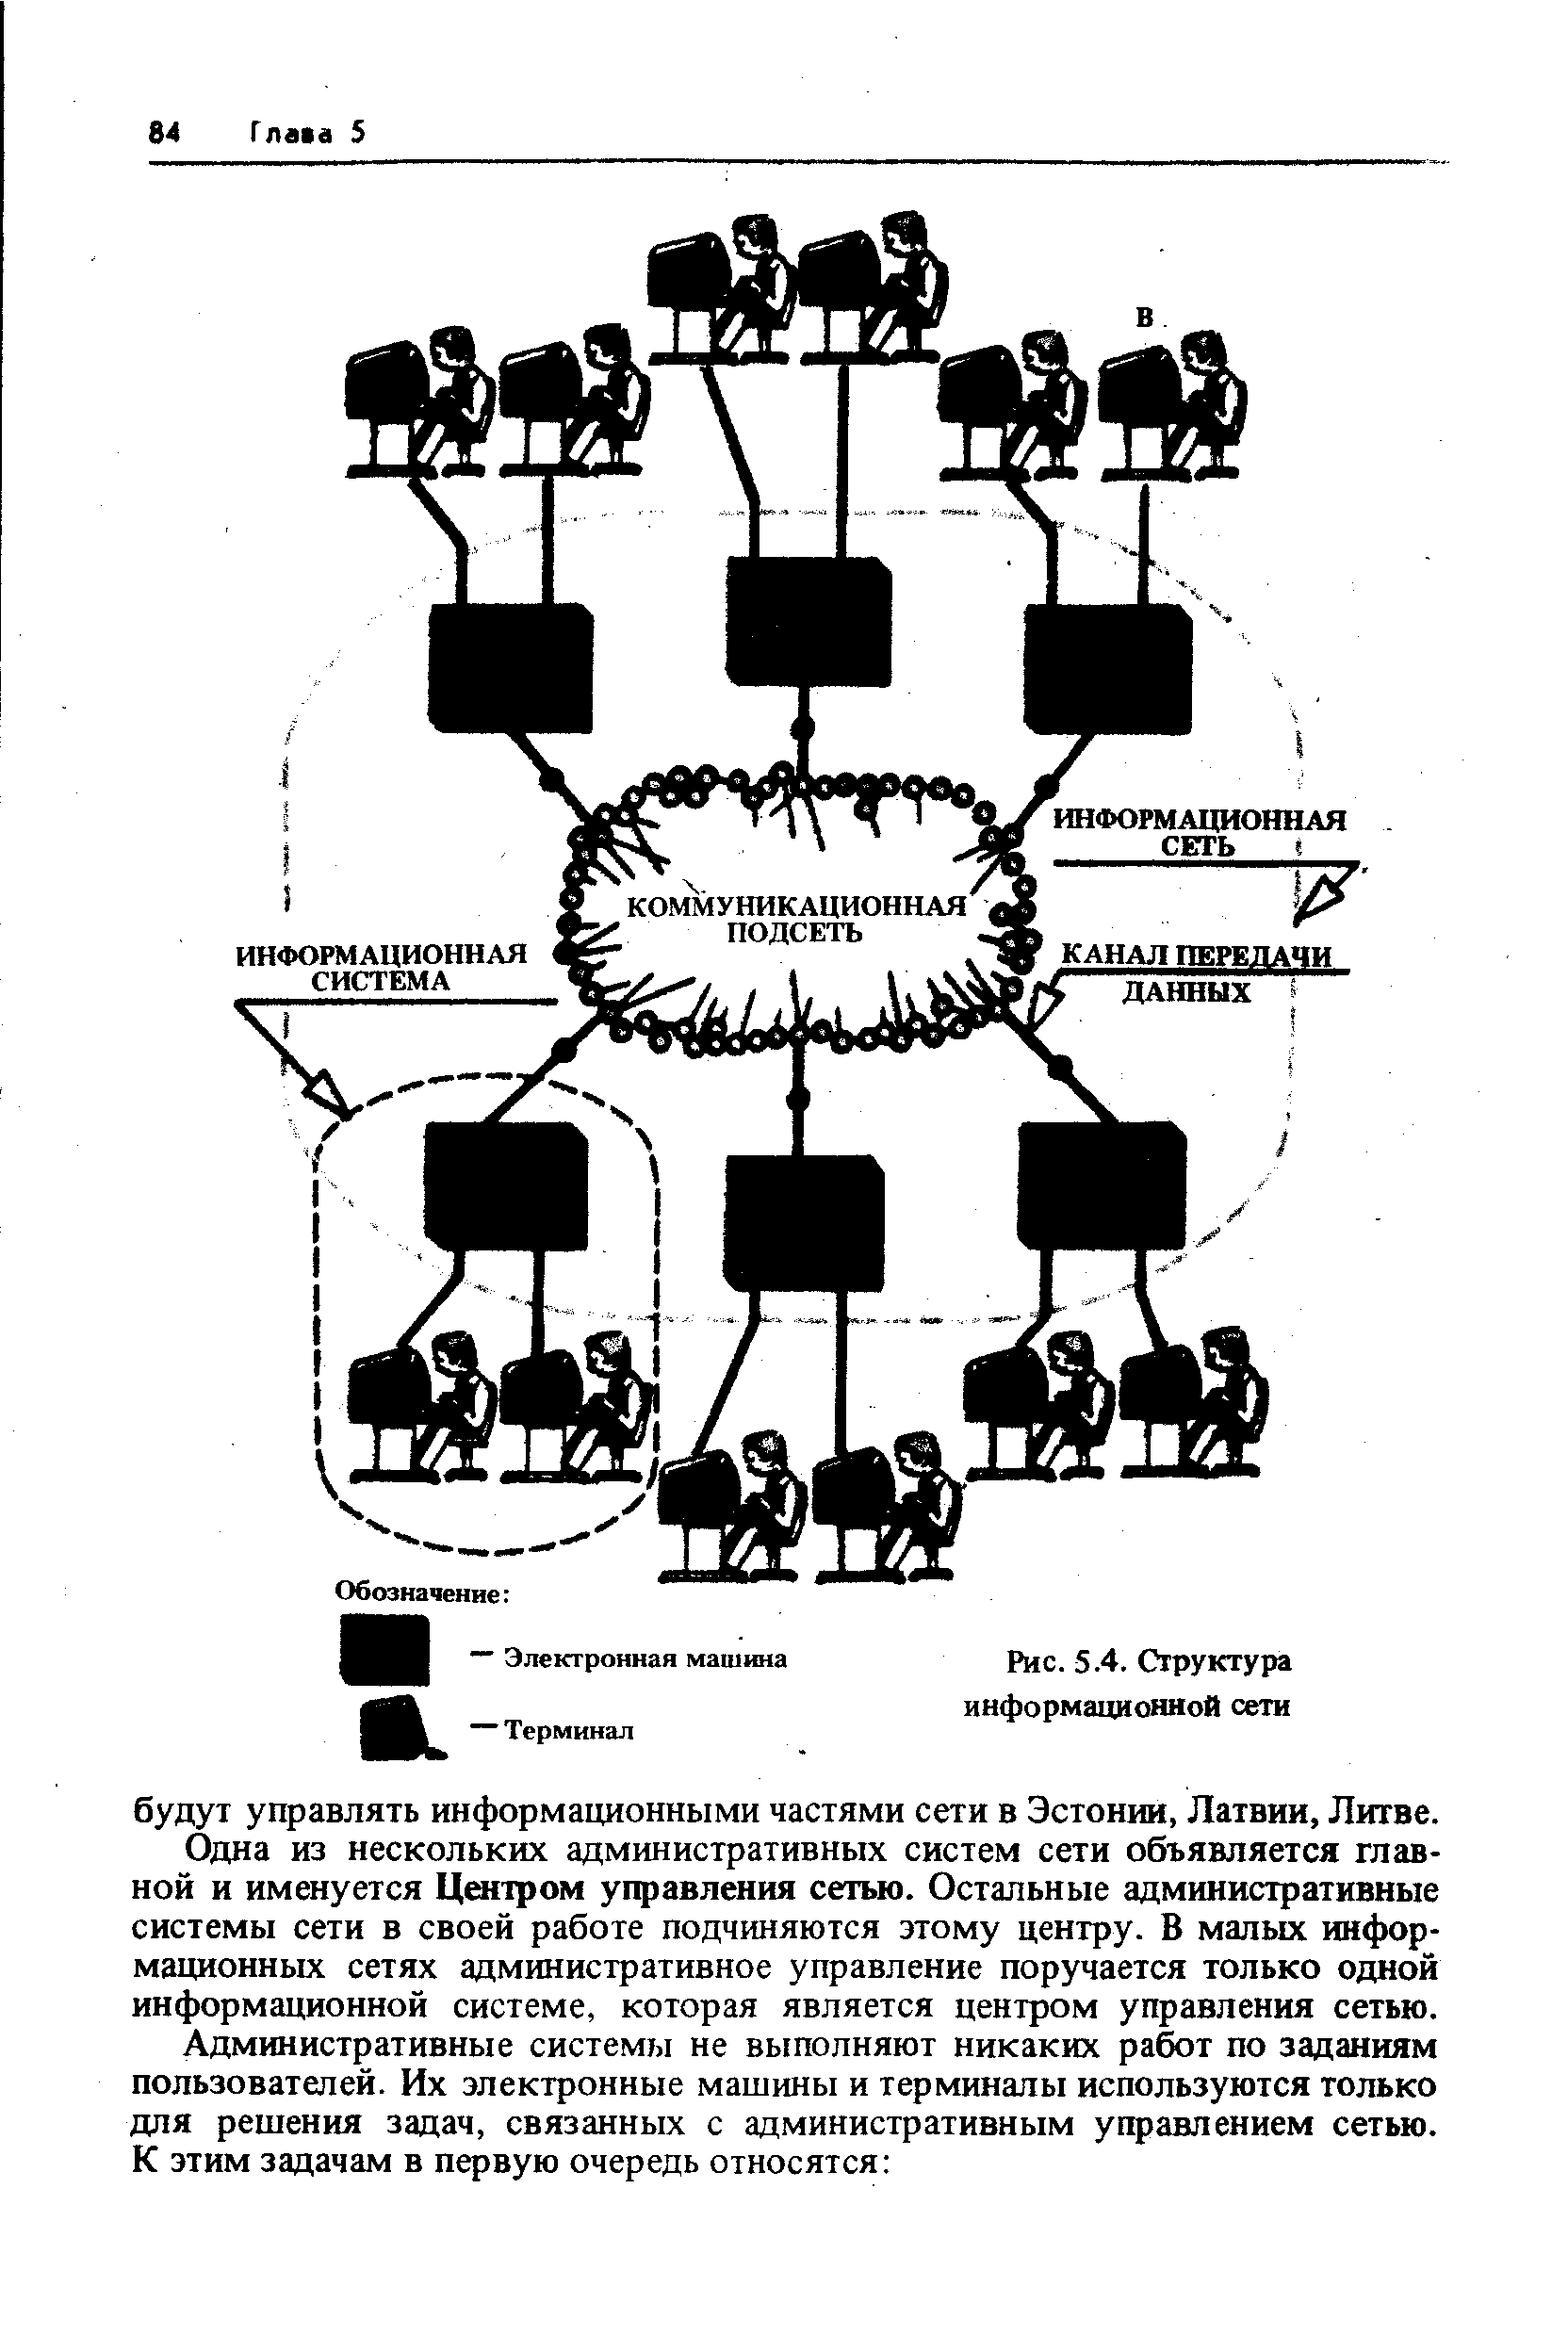 Рис. 5.4. Структура информационной сети
